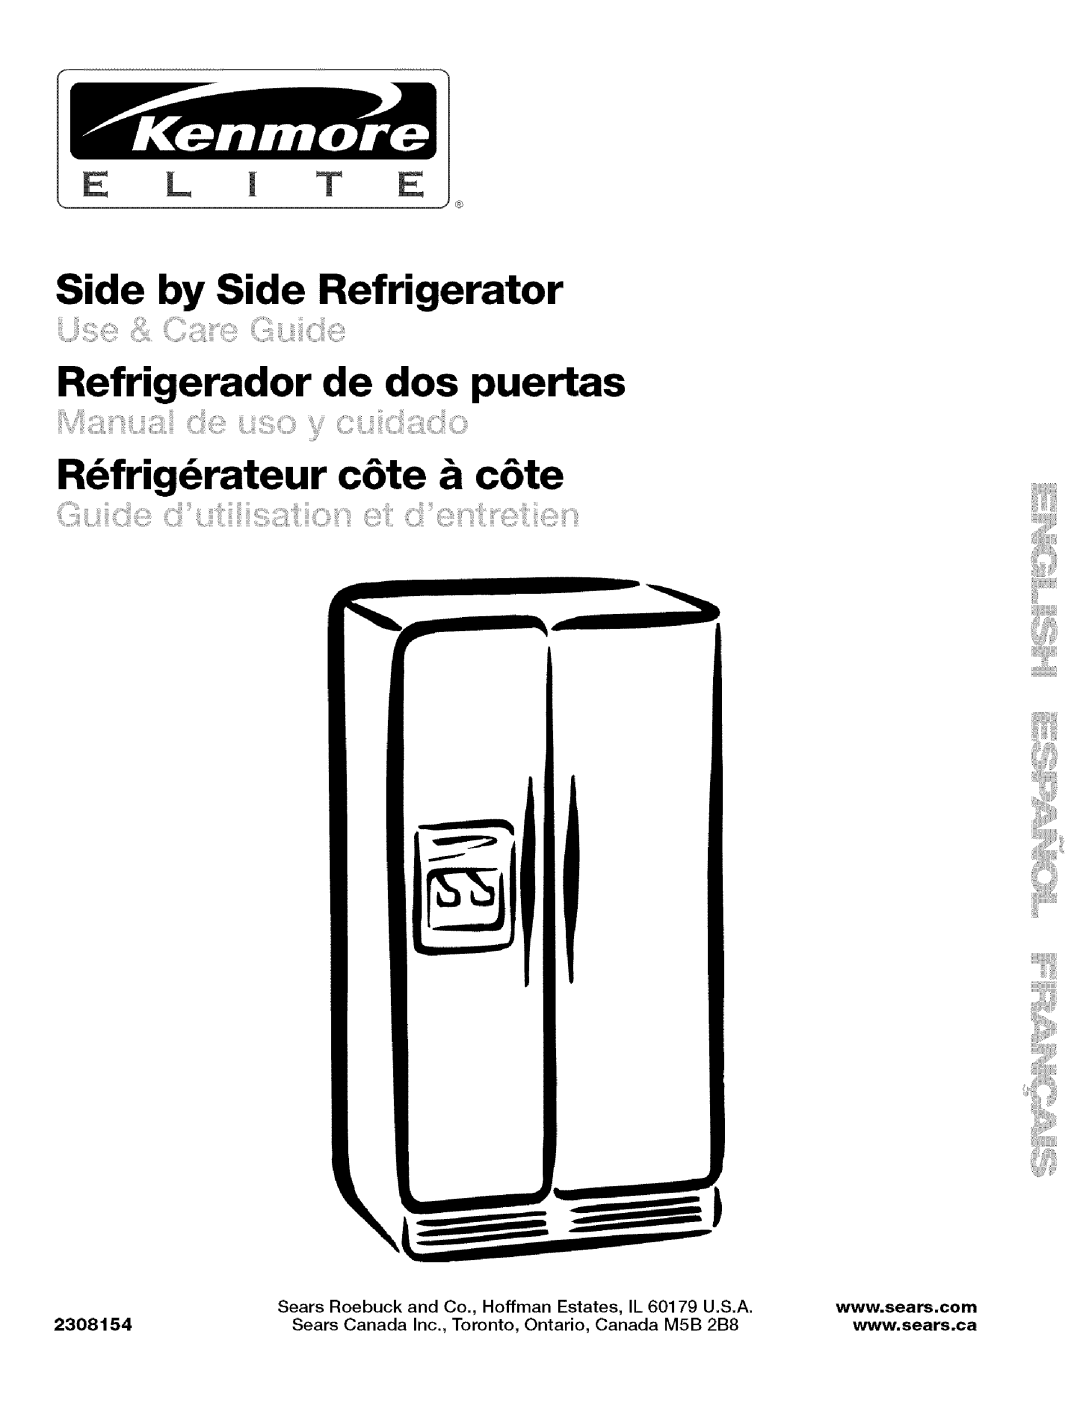 Kenmore 10656719500, Elite manual Side by Side Refrigerator, Refrigerador de dos puertas, R frig rateur c6te & c6te, U.S.A 